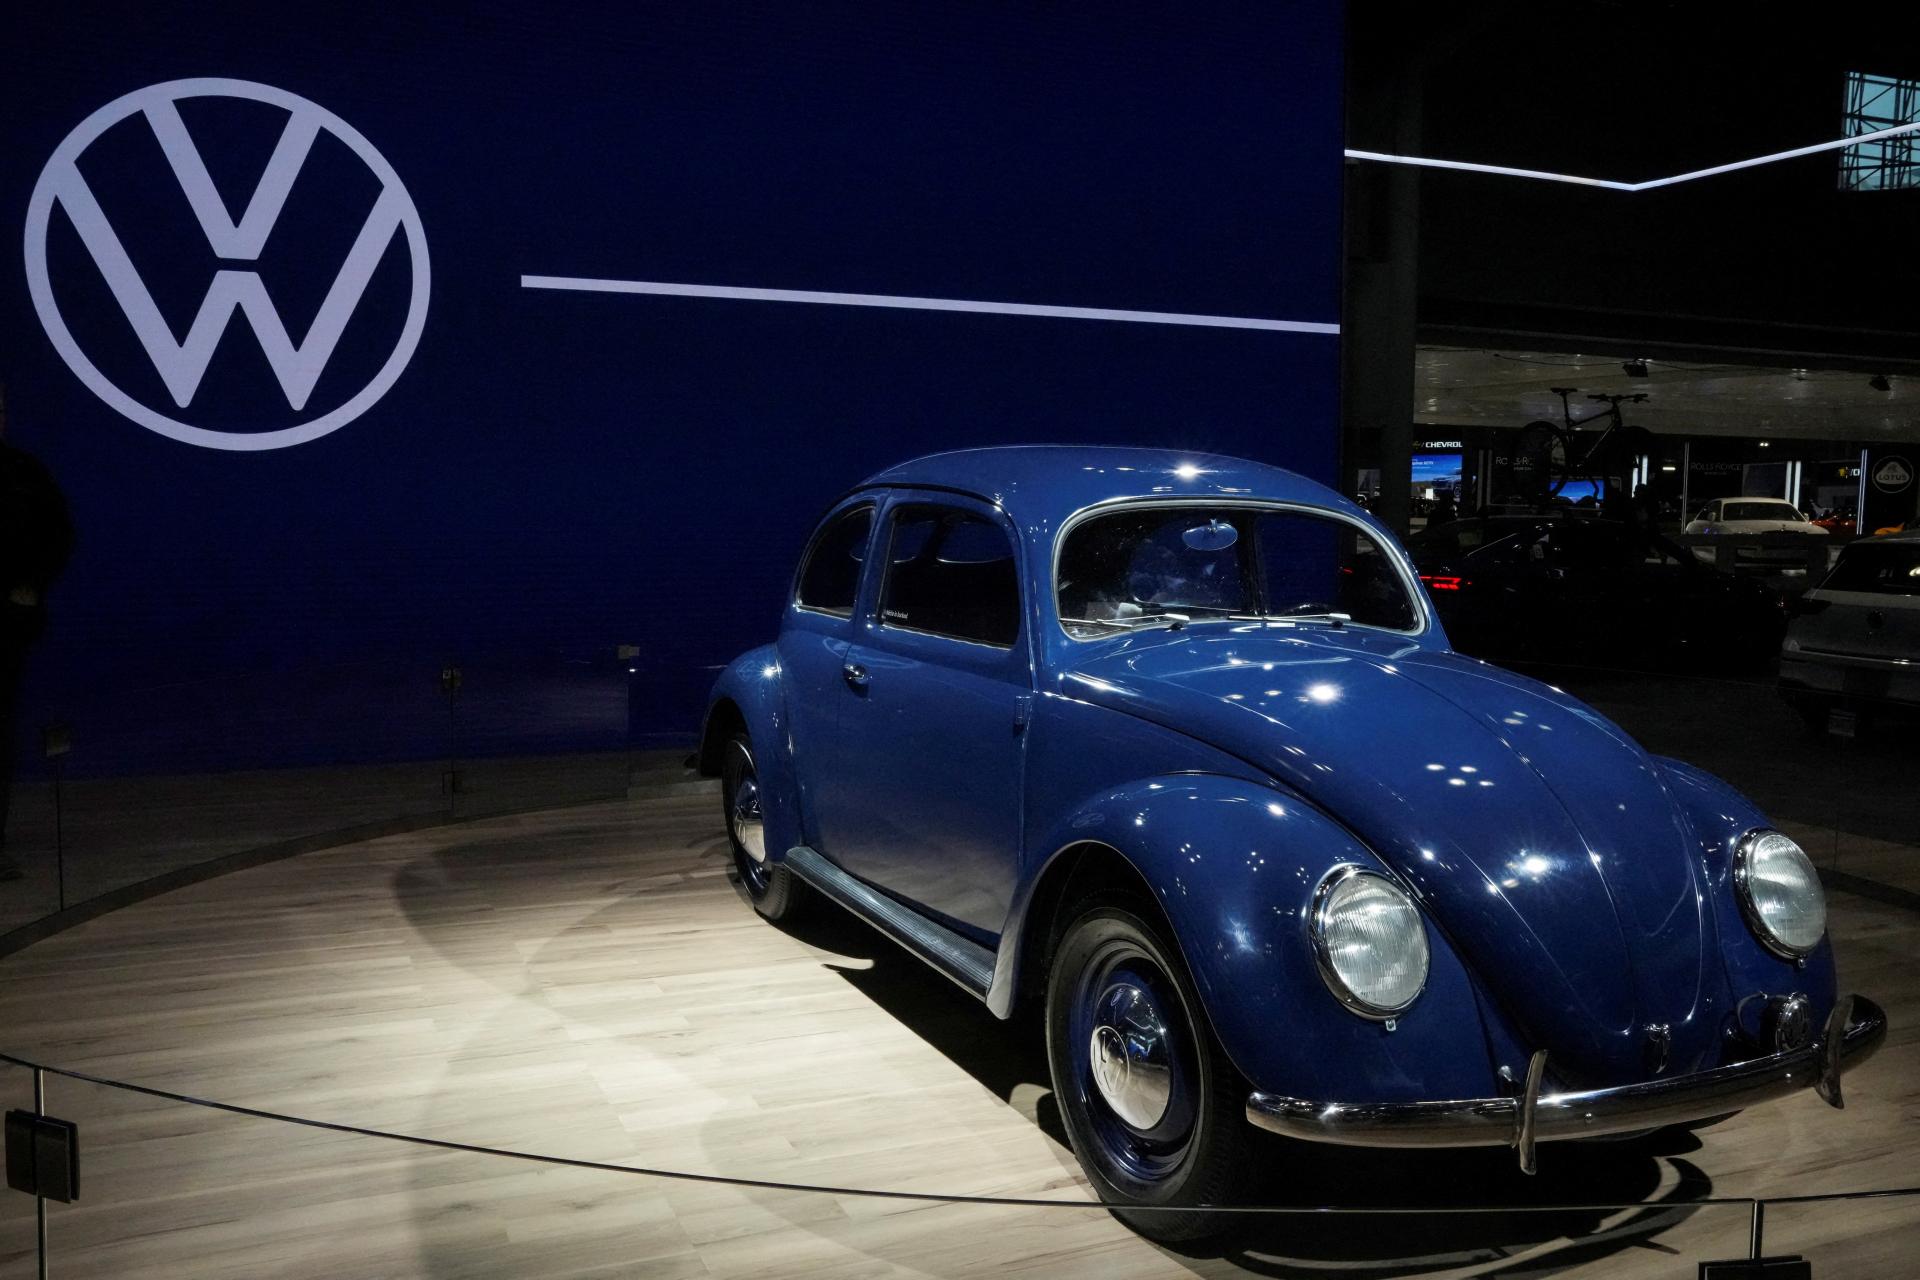 Skupine Volkswagen v druhom štvrťroku klesol prevádzkový zisk. Výsledok napriek tomu prekonal očakávania